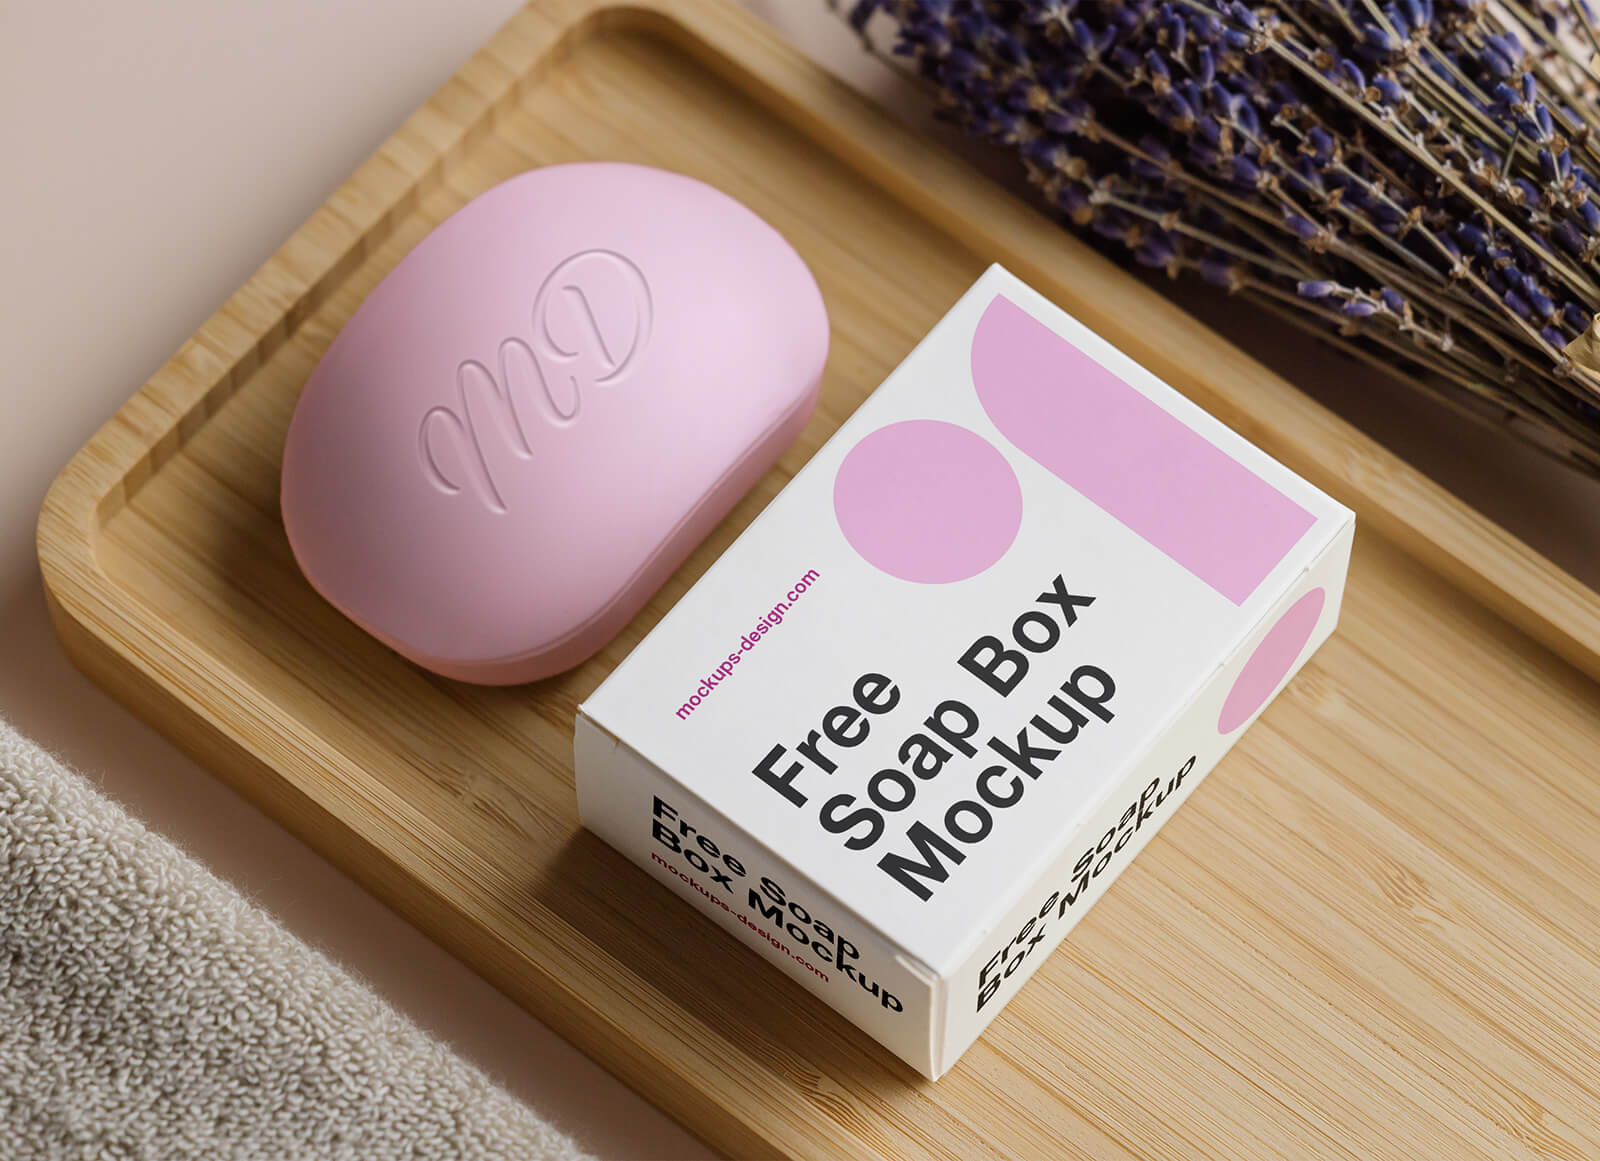 Soap Bar & Packaging Box Mockup | Free PSD Templates